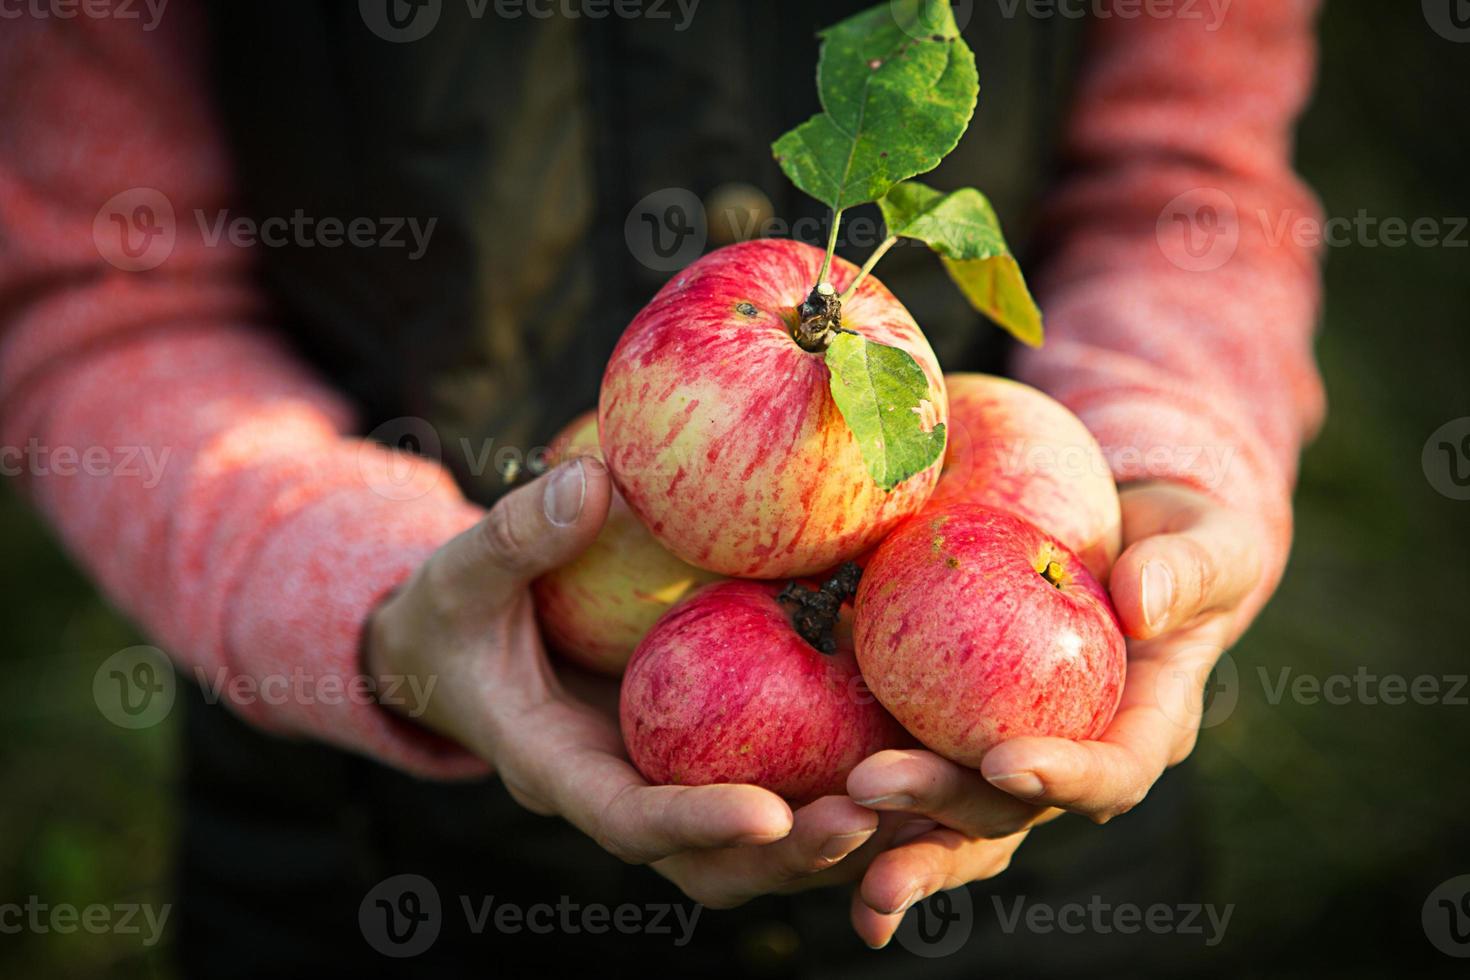 rosa med ränder färska äpplen från grenar i kvinnors händer på en mörkgrön bakgrund. höstens skördefest, jordbruk, trädgårdsarbete, tacksägelse. varm atmosfär, naturliga miljövänliga produkter foto